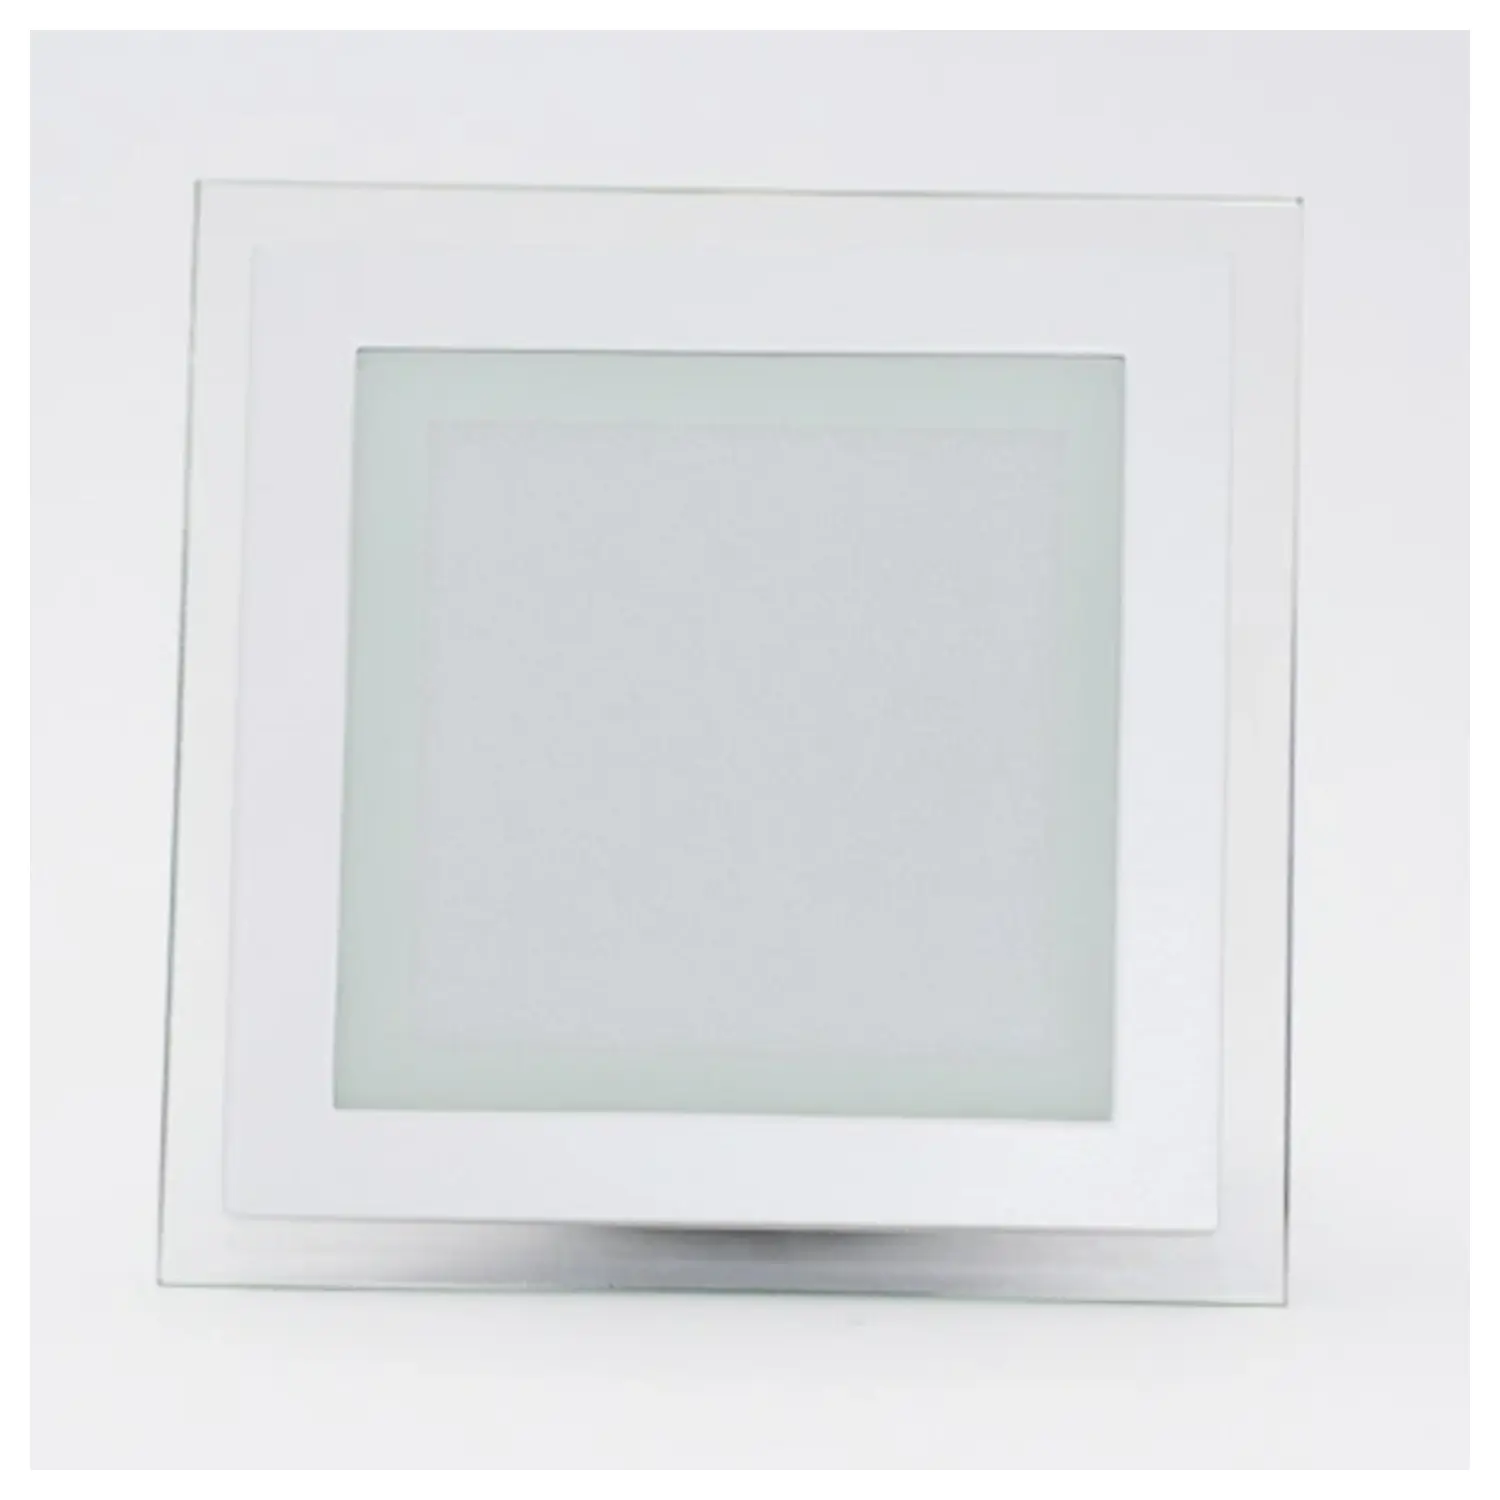 immagine del prodotto mini pannelo led cornice vetro incasso 12 watt bianco freddo quadrato